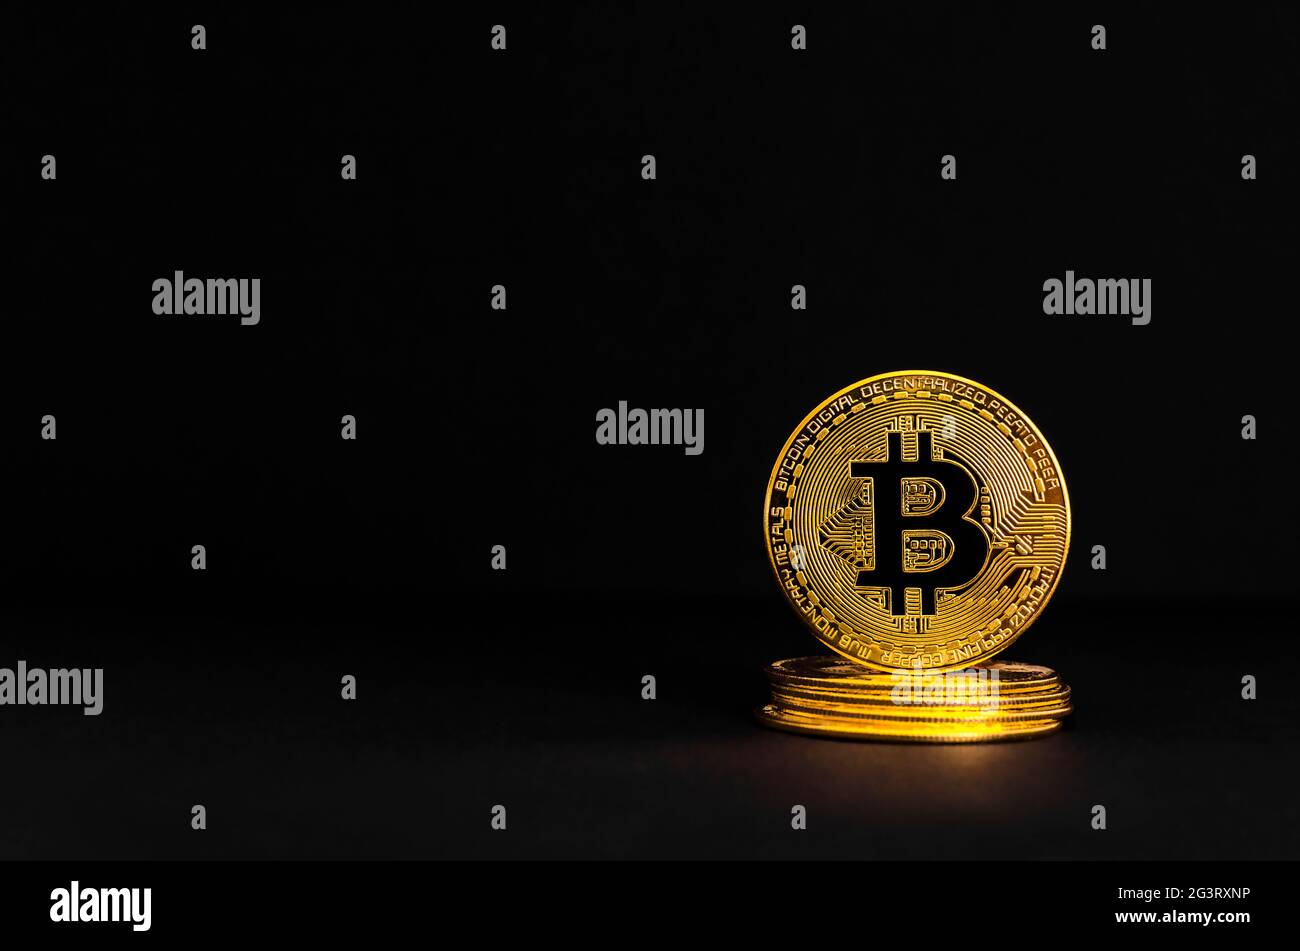 Bitcoin BTC crypto monnaie pièces d'or sur fond noir, nouveau concept de monnaie virtuelle. Technologie minière ou blockchain Banque D'Images